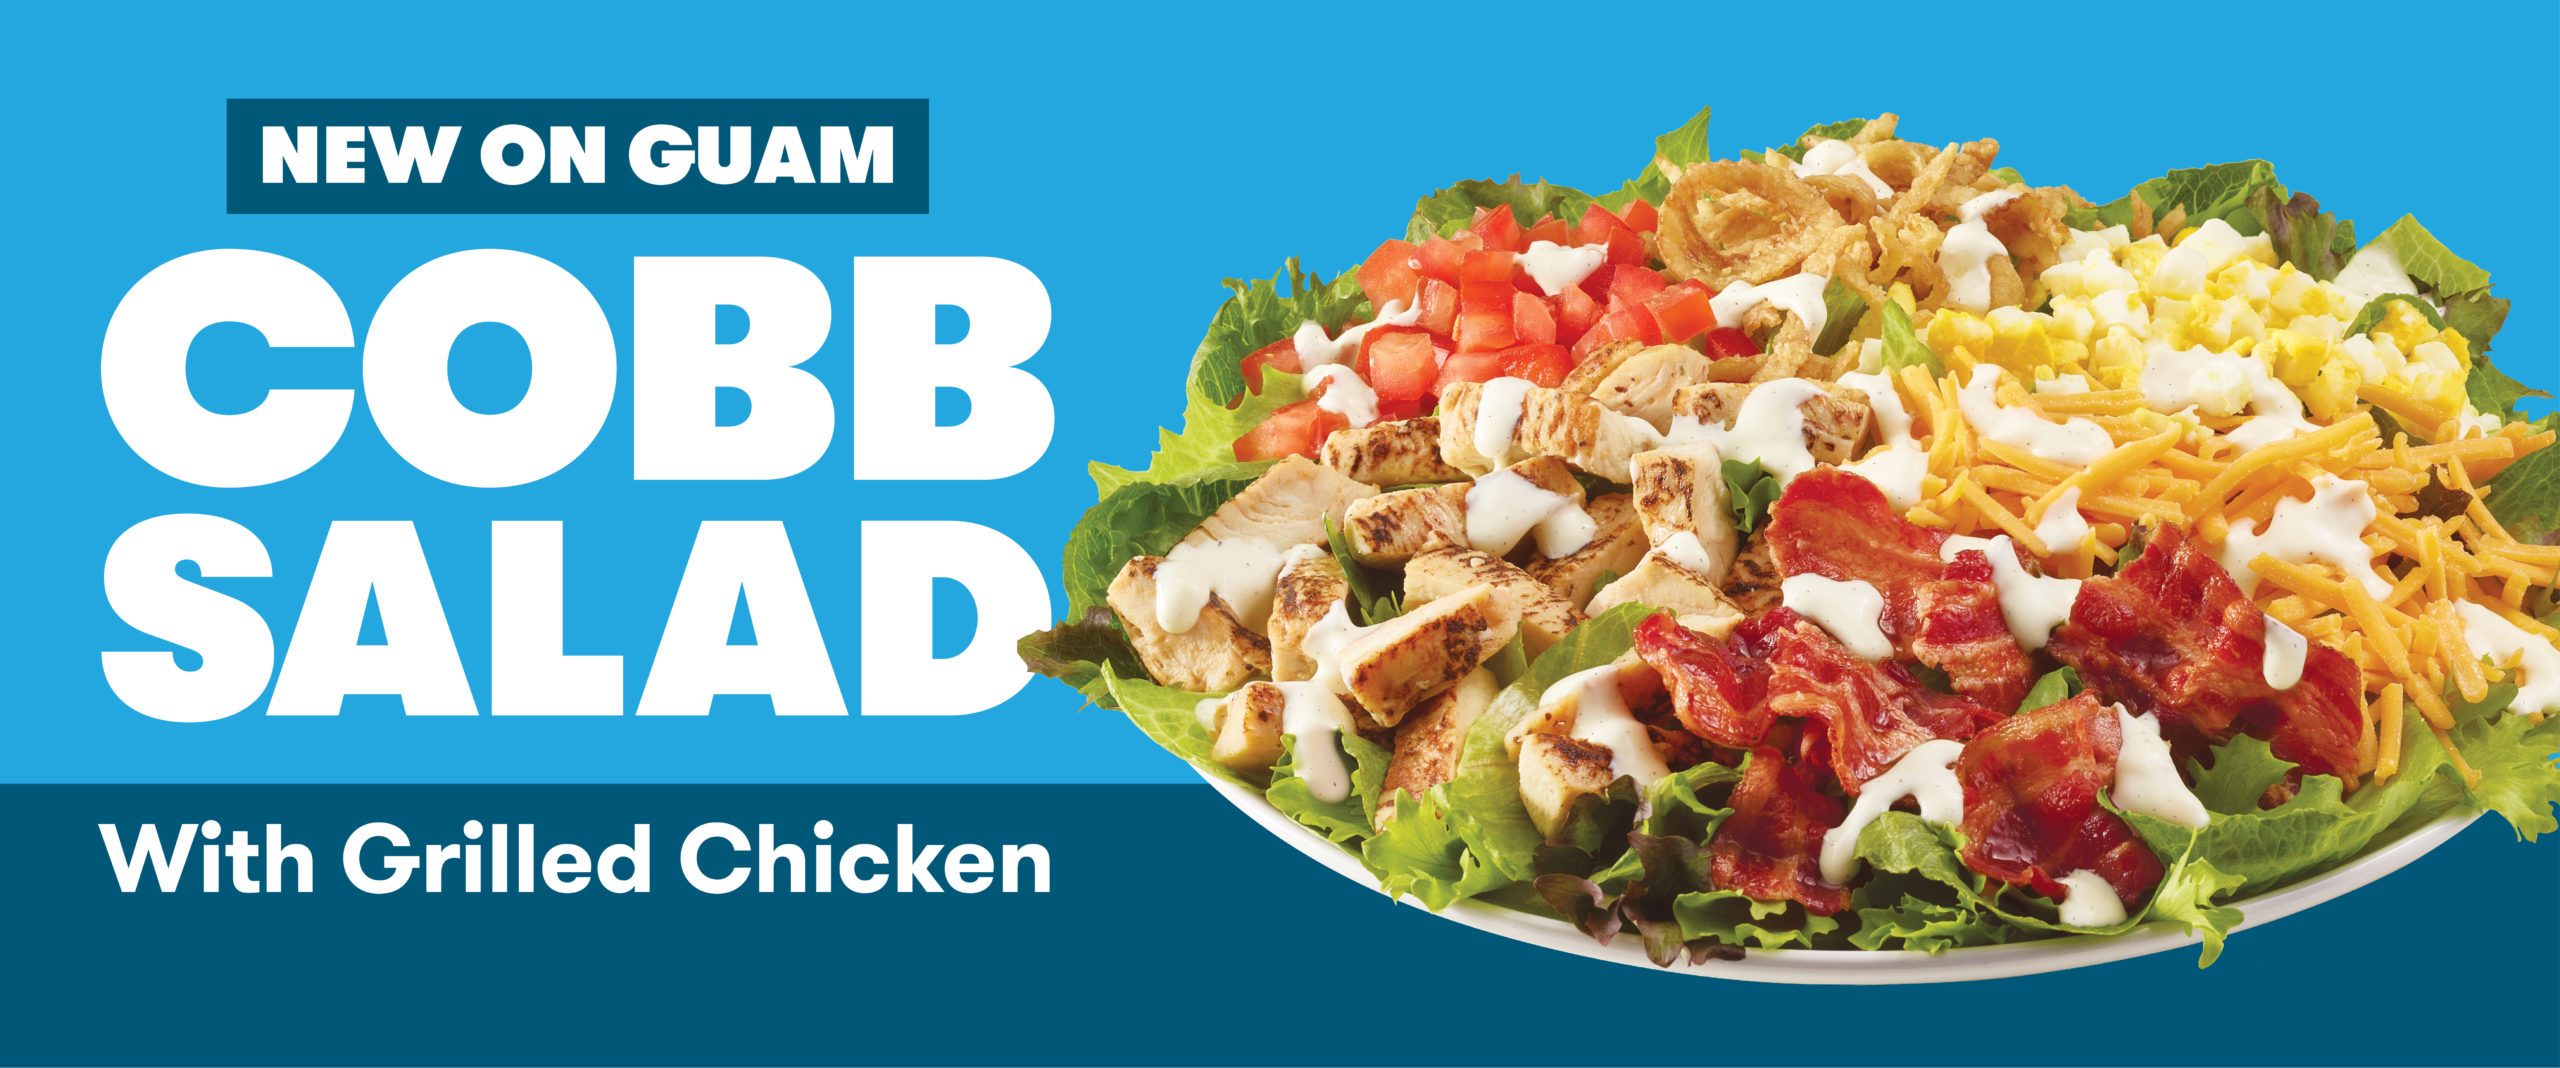 NEW! Grilled Chicken Cobb Salad - Wendy's Guam®